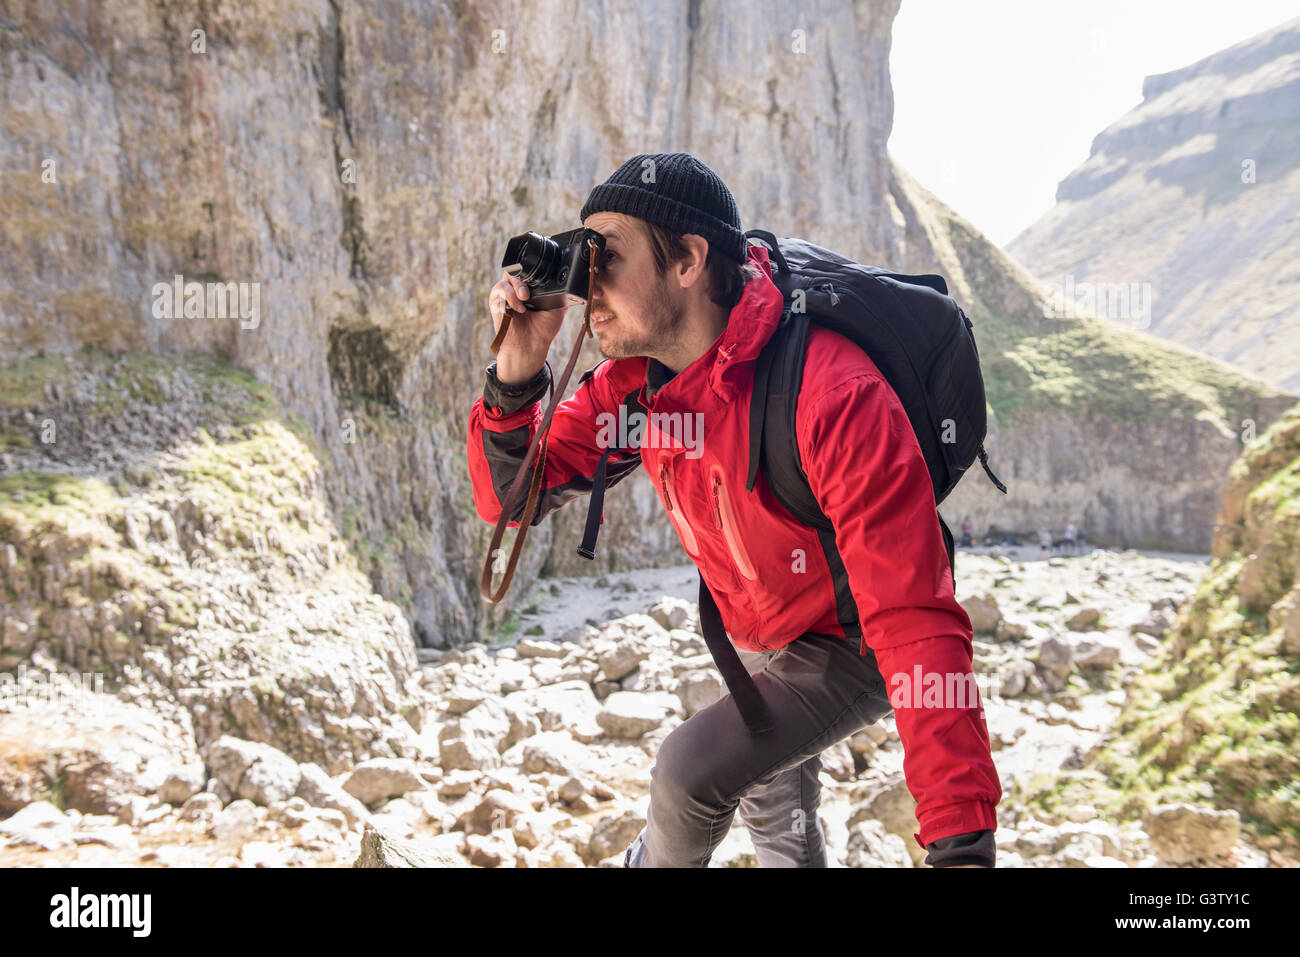 L'alpiniste escalade sur les rochers, de prendre des photographies dans un terrain accidenté. Banque D'Images